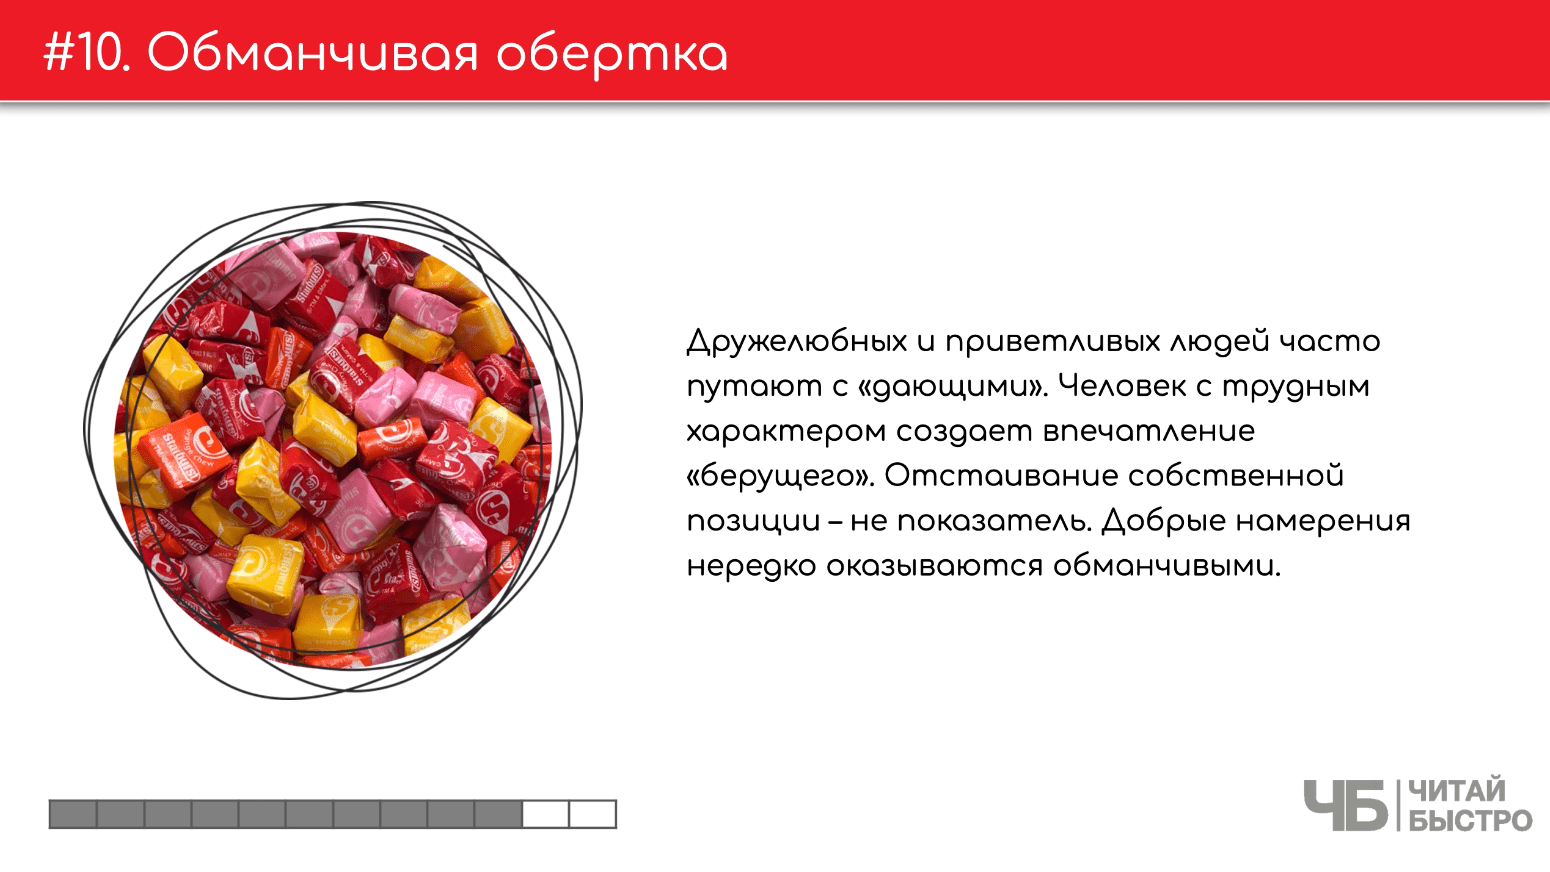 На этом слайде изображен тезис о обманчивой обертке и иллюстрация конфет.